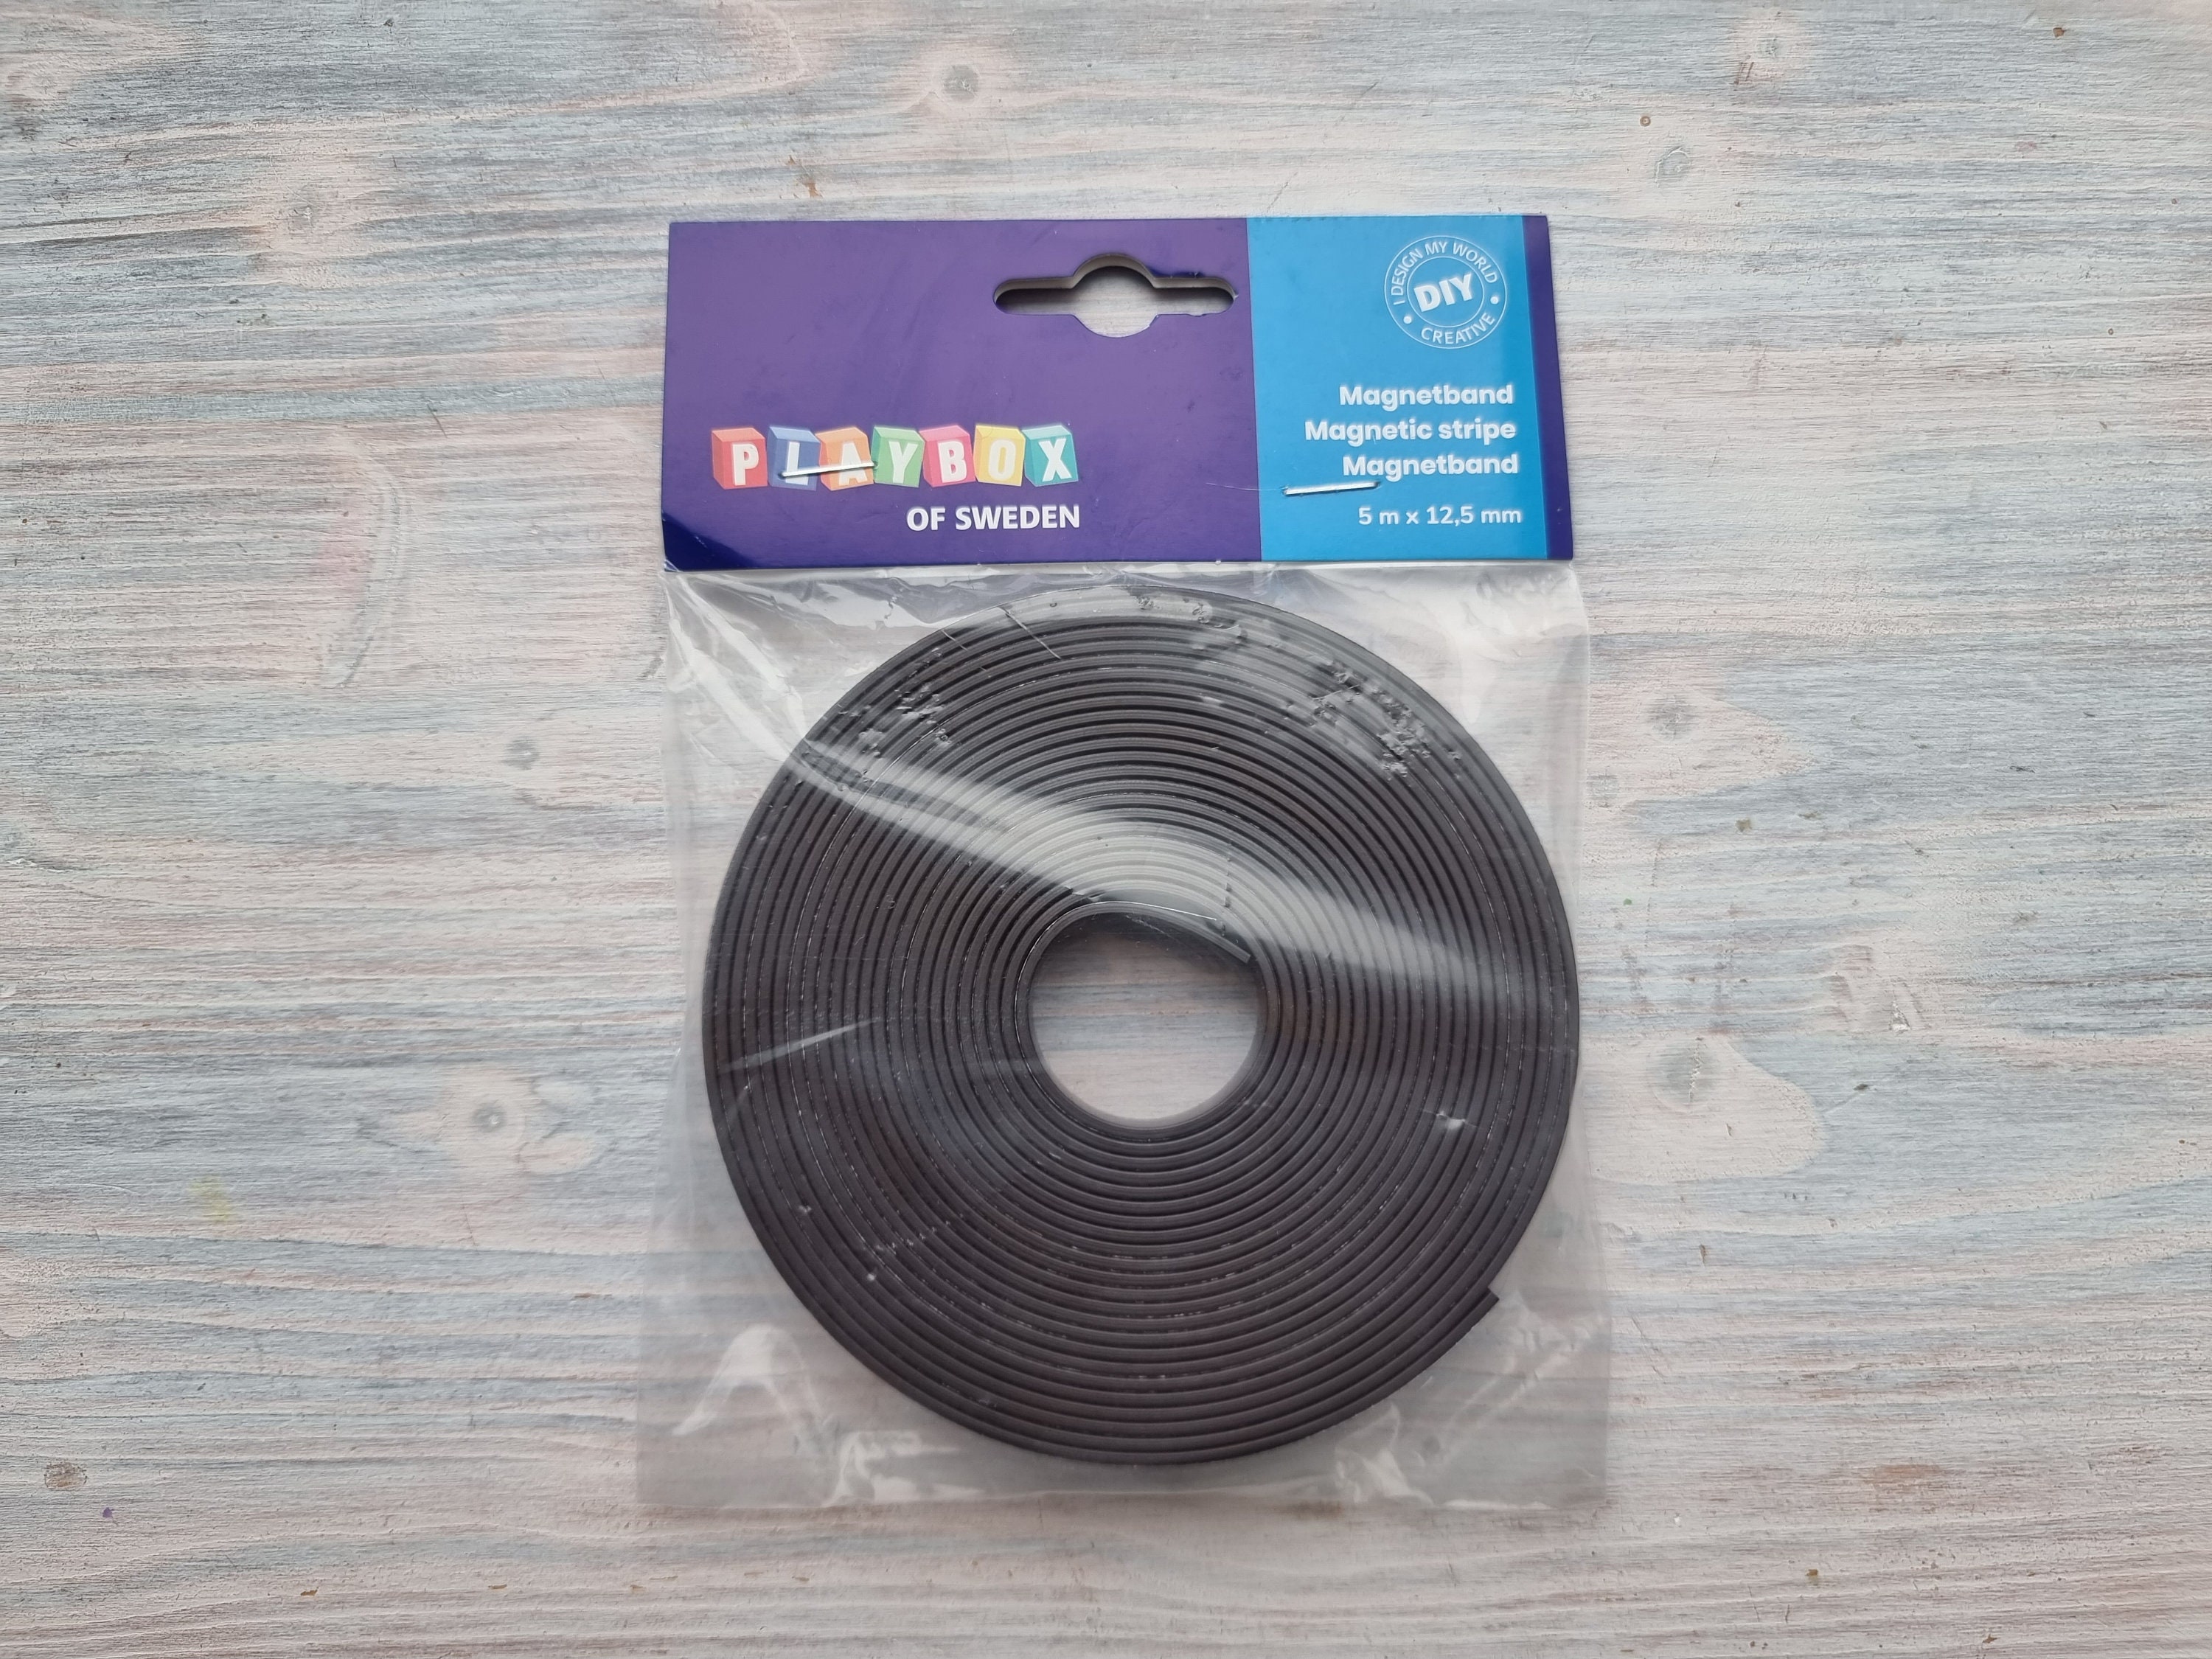 Flexible Magnetic Ruler 1m Length Magnet Tape Measure 